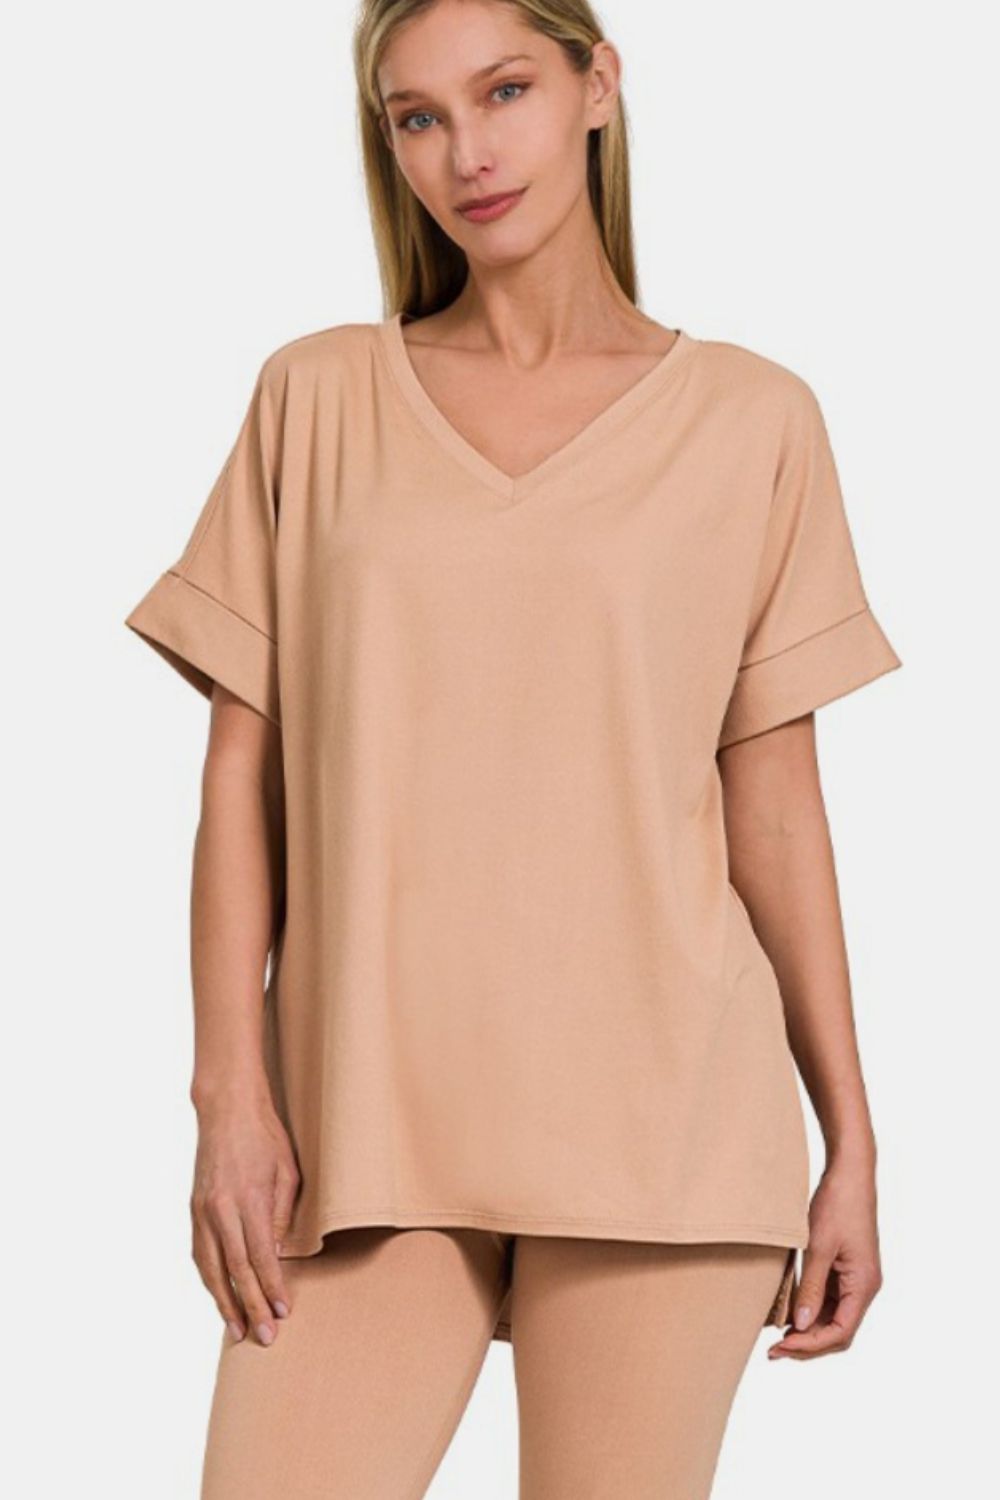 Zenana Brush V-Neck Rolled Short Sleeve T-Shirt and Leggings Lounge Set Trendsi